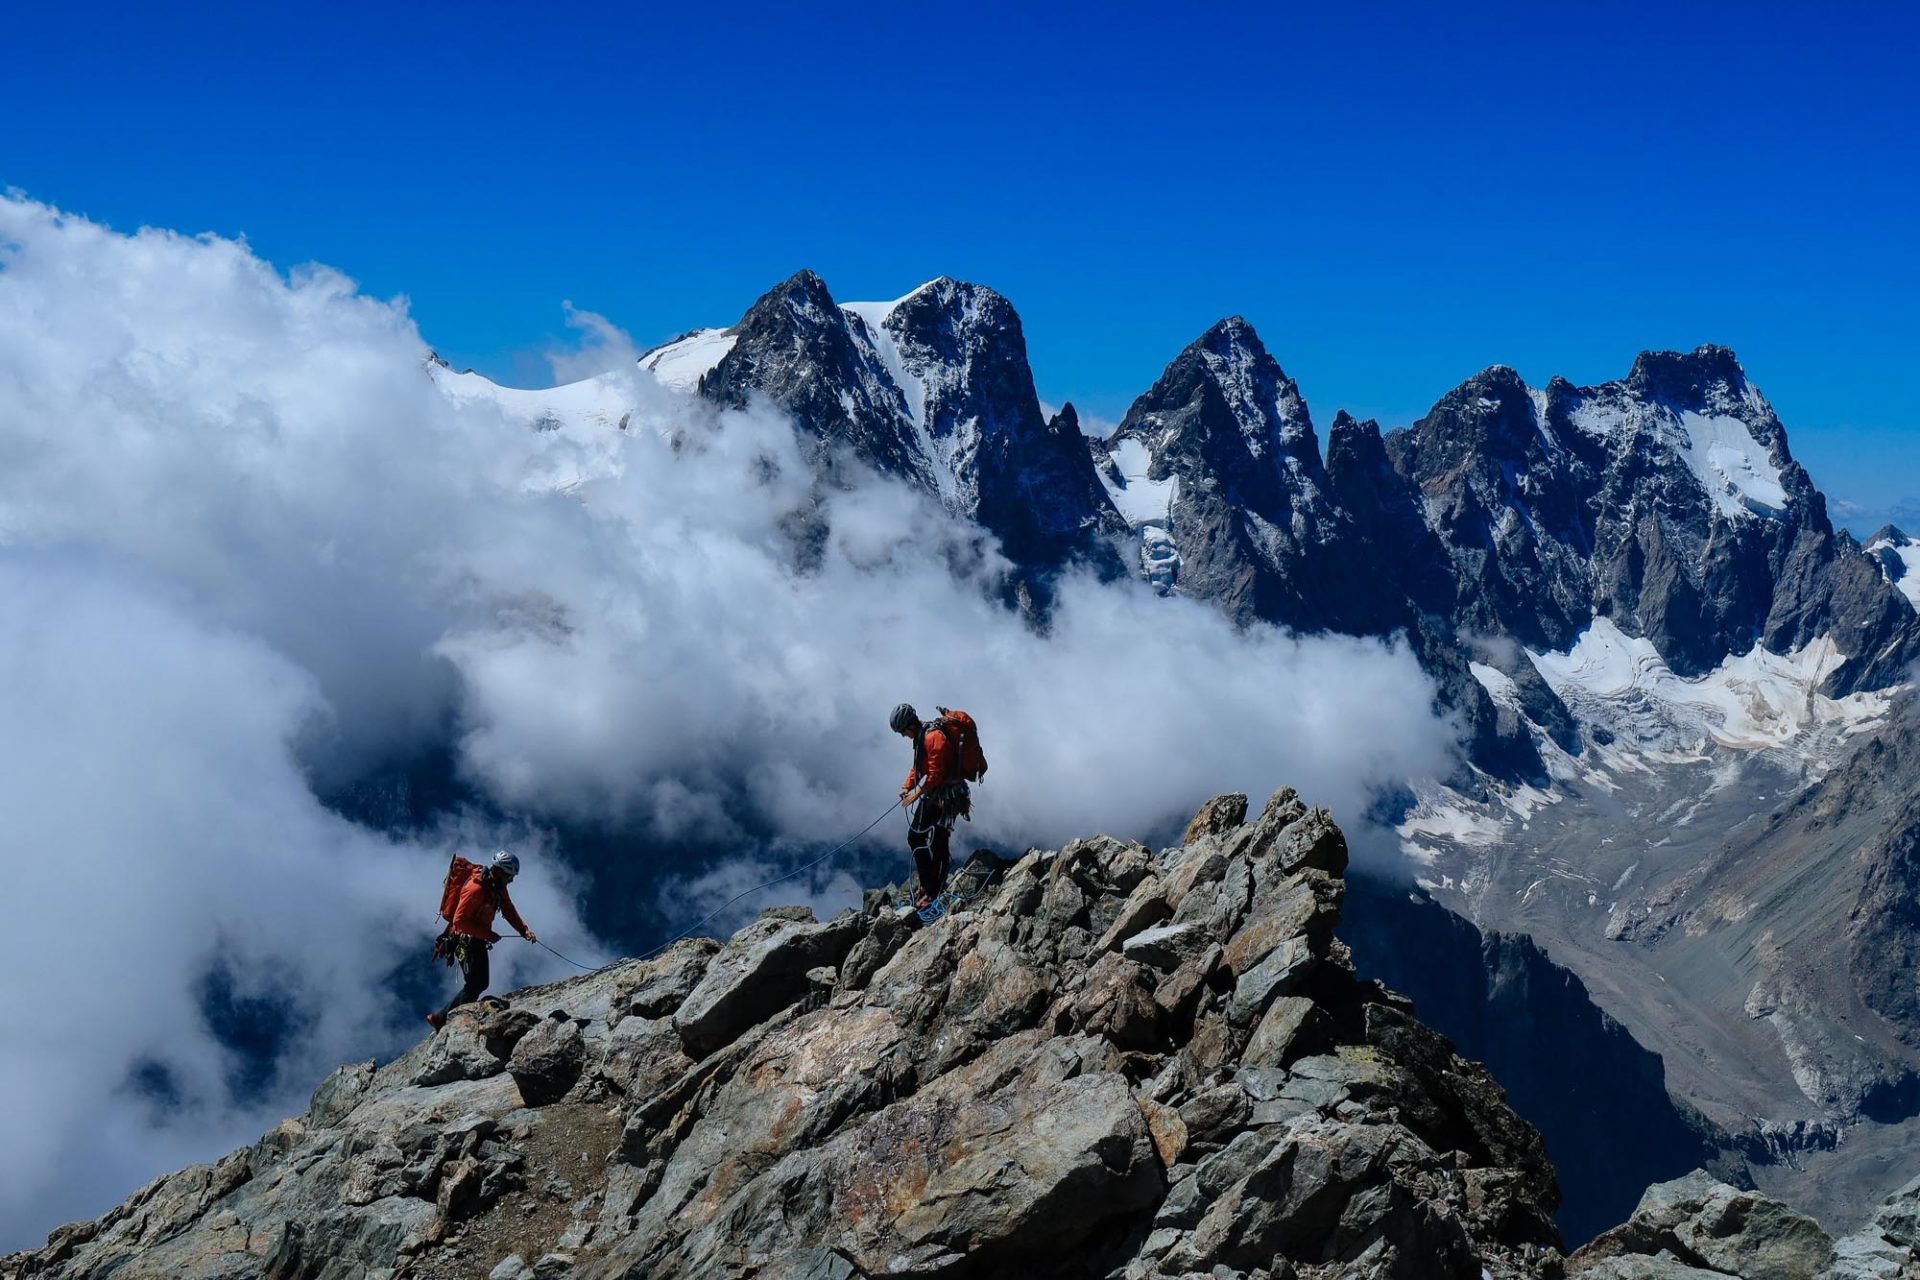 Exklusivaktion für Alpinistinnen © Florian Huber